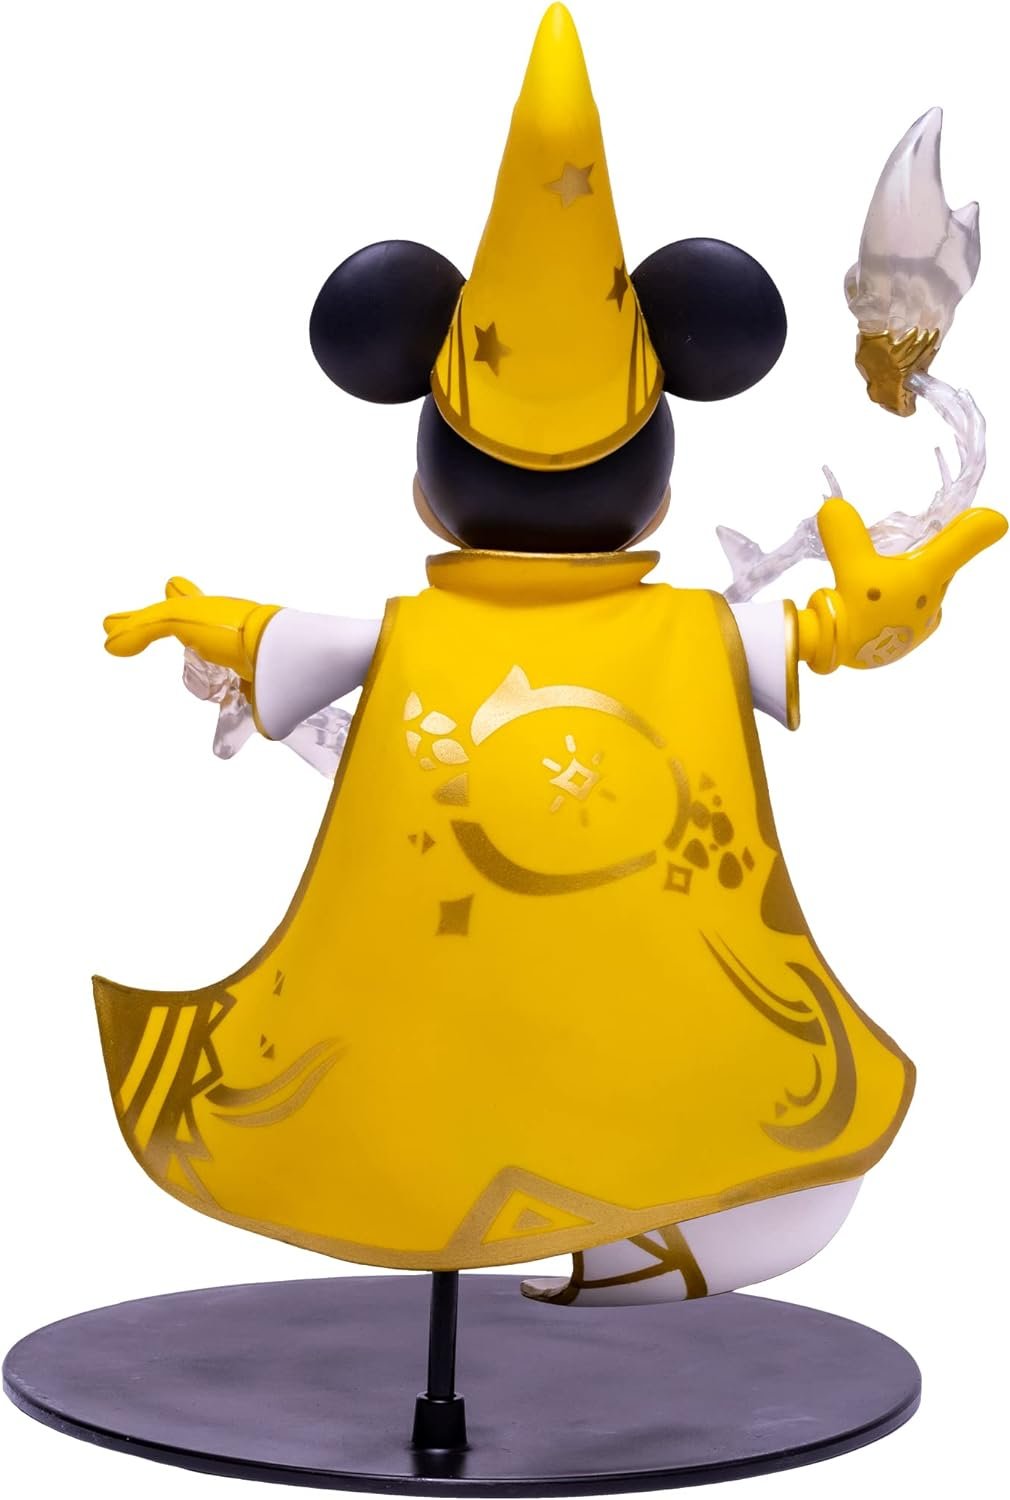 Disney Mirrorverse Mickey Mouse 12" Deluxe Figure